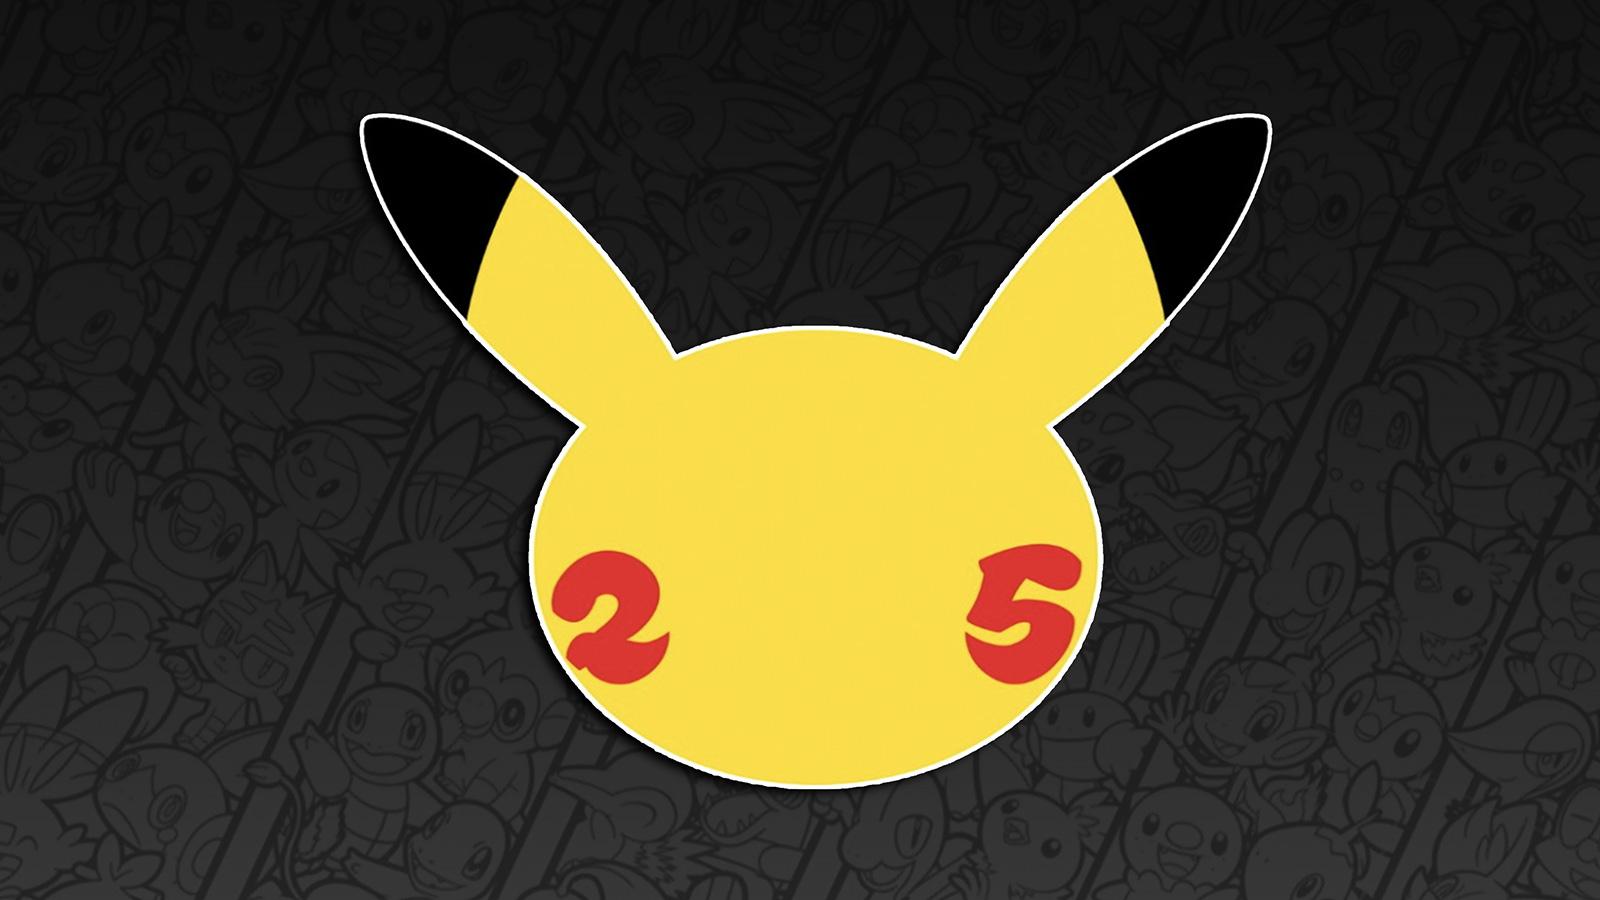 Screenshot of Pokemon 25th anniversary logo.